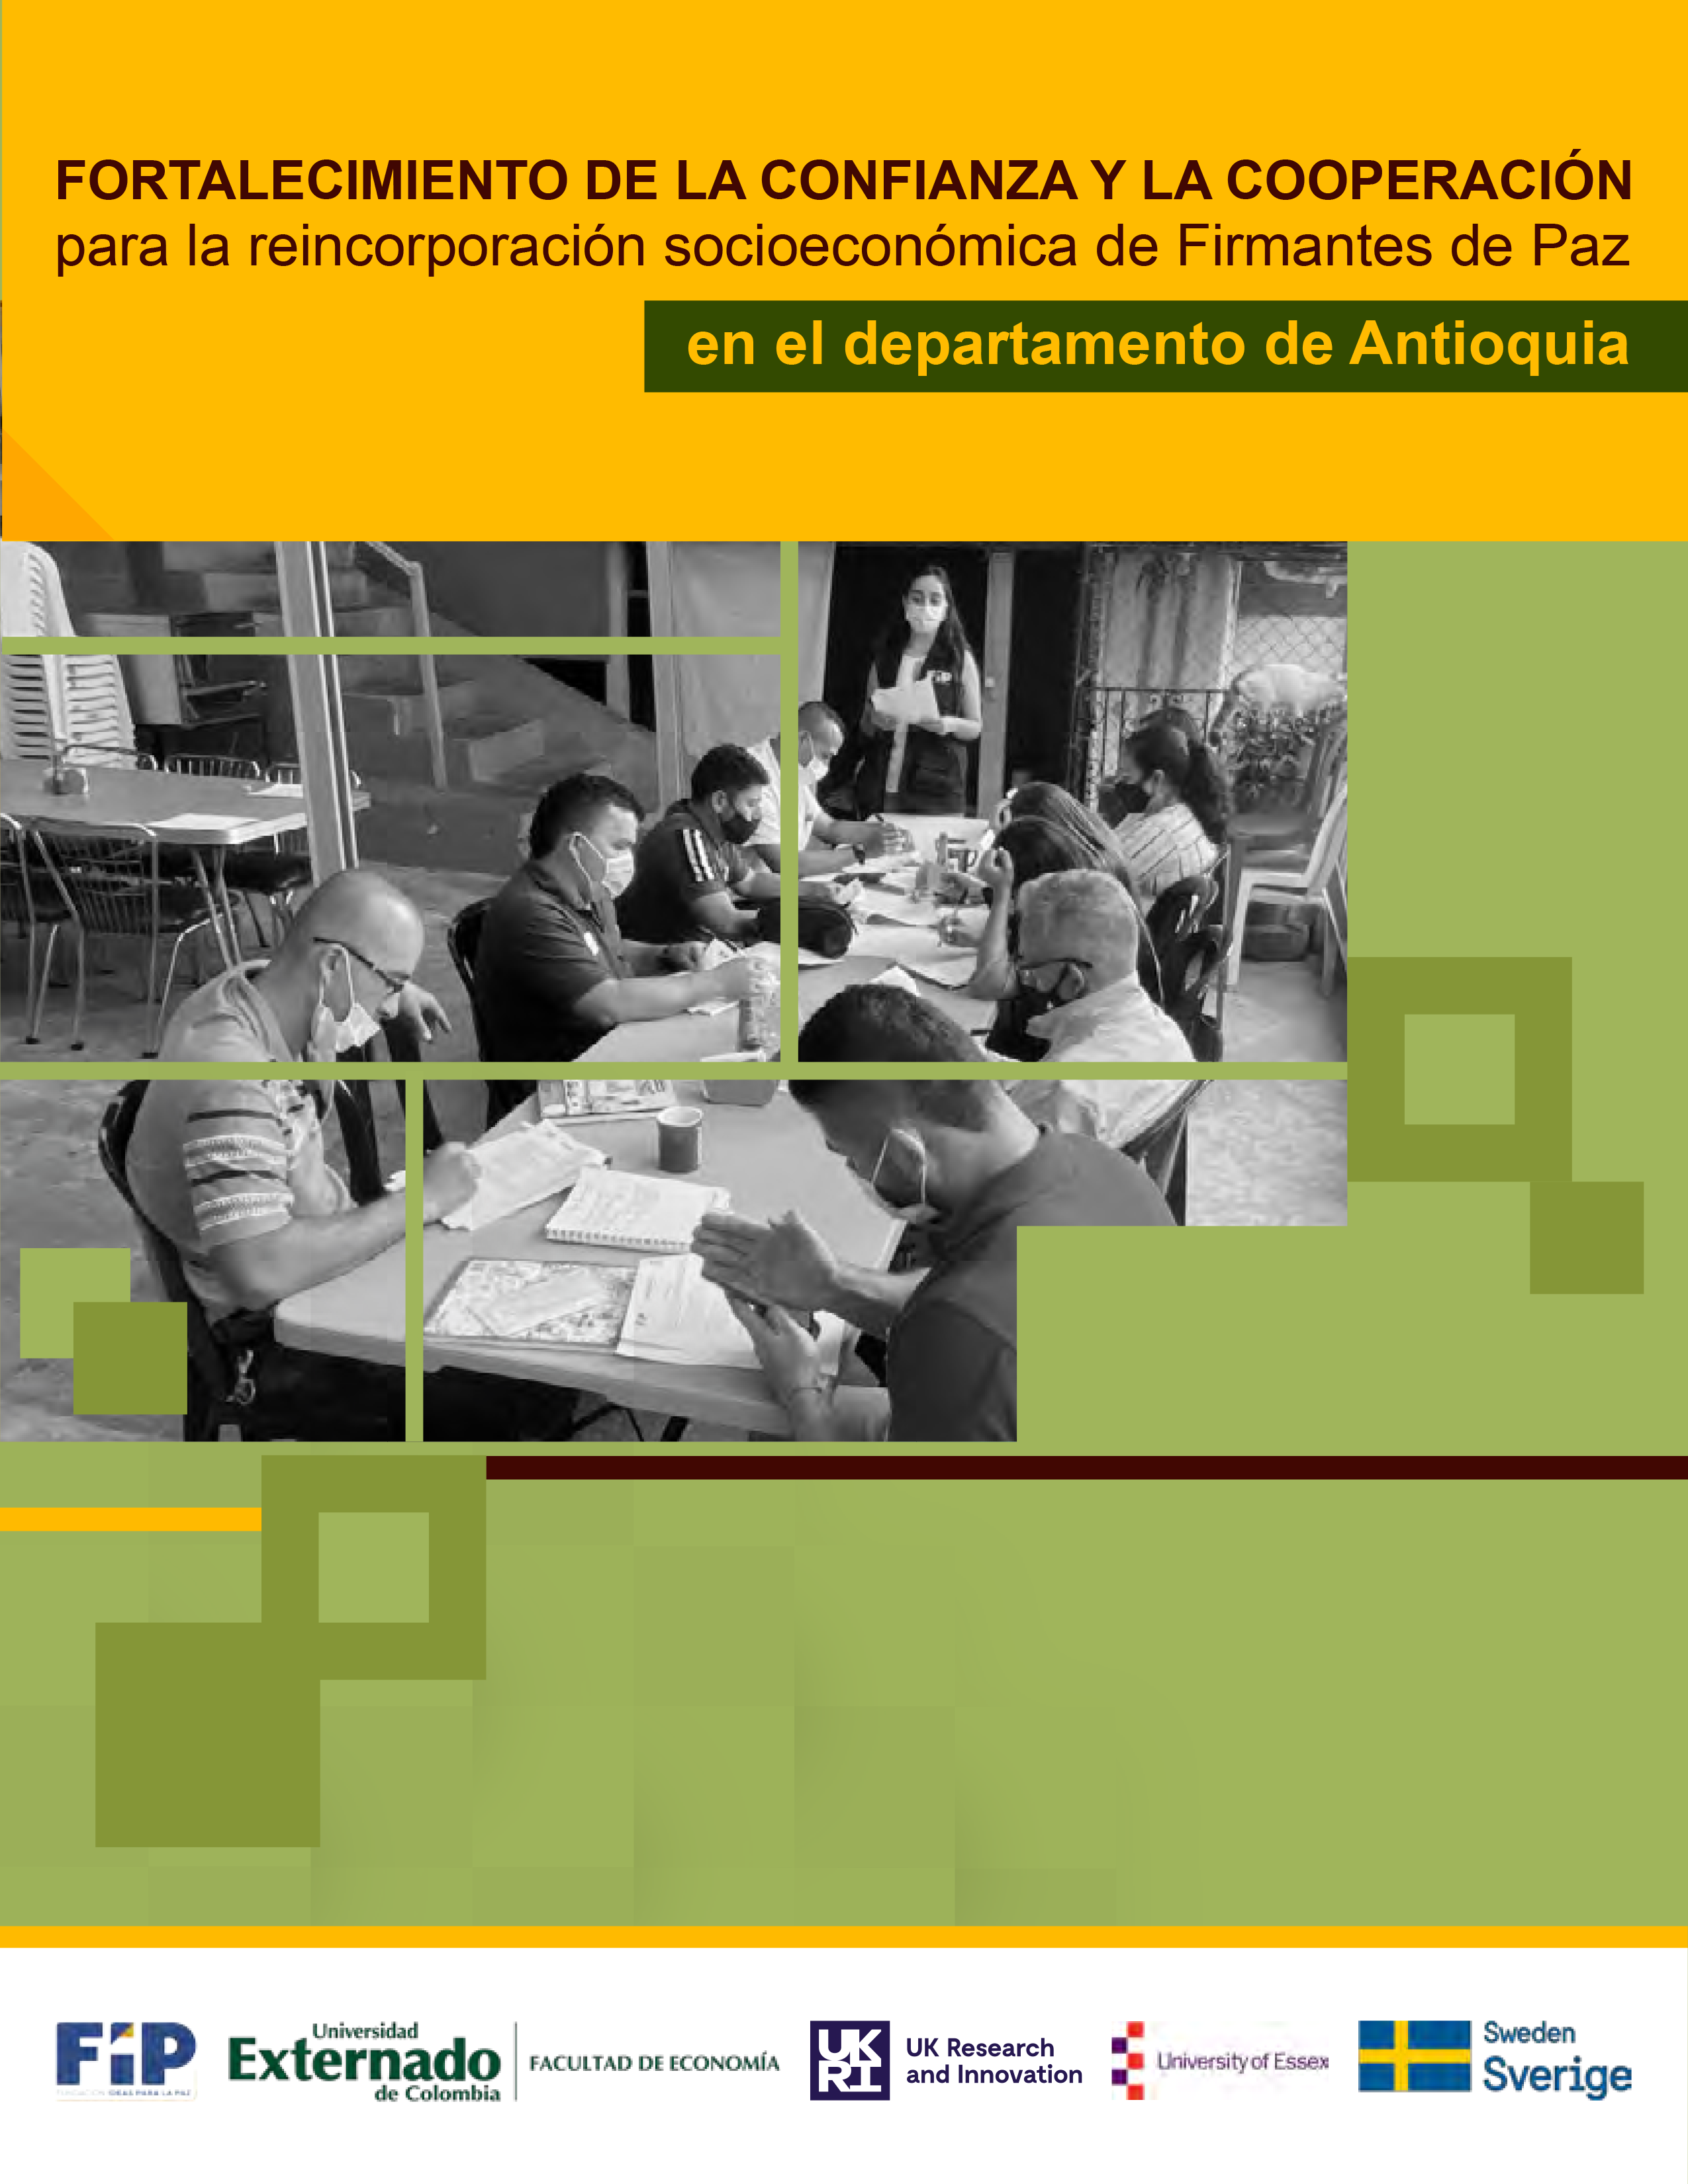 Fortalecimiento de la confianza y la cooperación para la reincorporación socioeconómica de Firmantes de Paz en el departamento de Antioquia